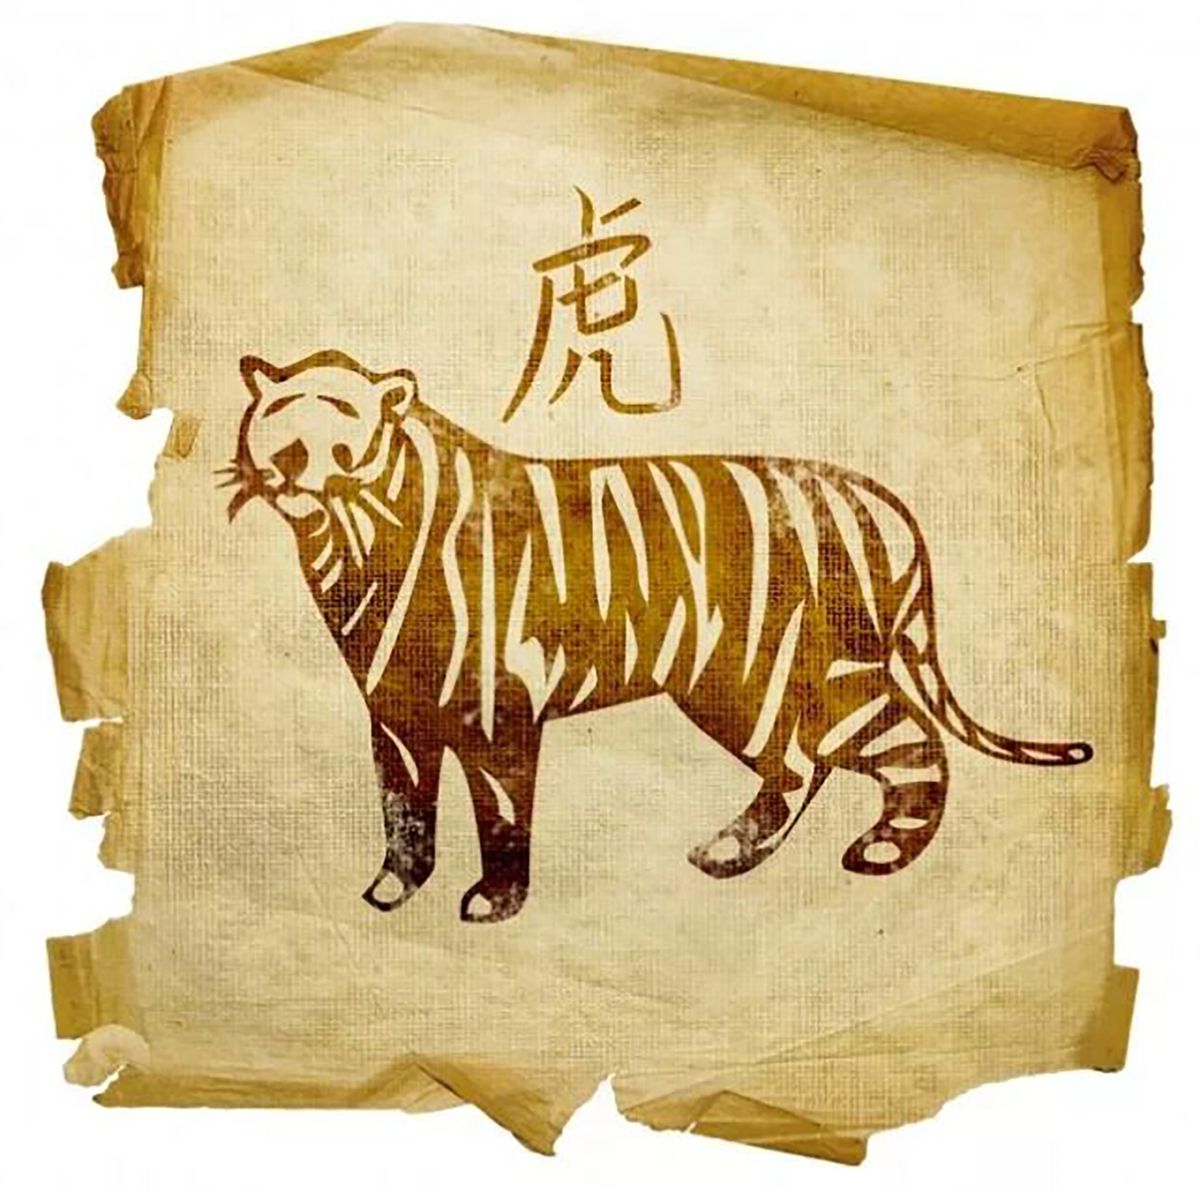 Он творец и разрушитель, могучий и бесстрашный, благородный и независимый:  каким будет год Тигра